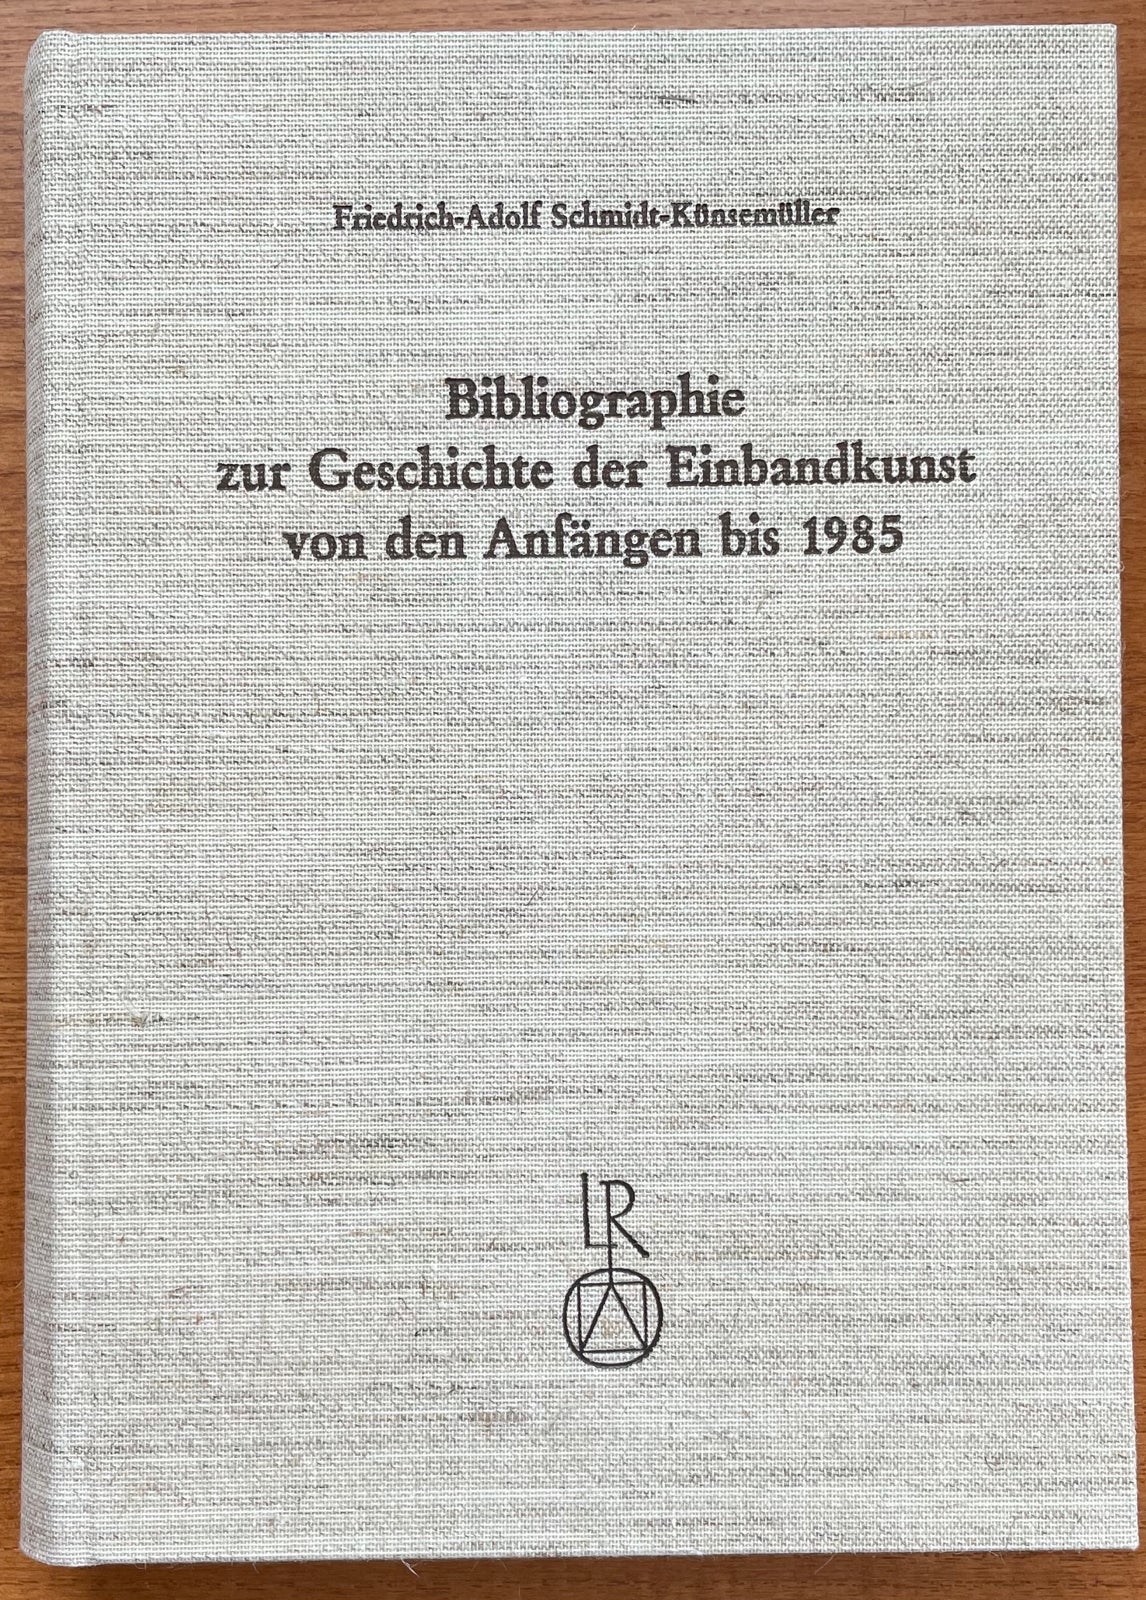 Item #12526 Bibliographie zur Geschichte der Einbandkunst von den Anfängen bis 1985. Friedrick-Adolf Schmidt-Kunsemuller.